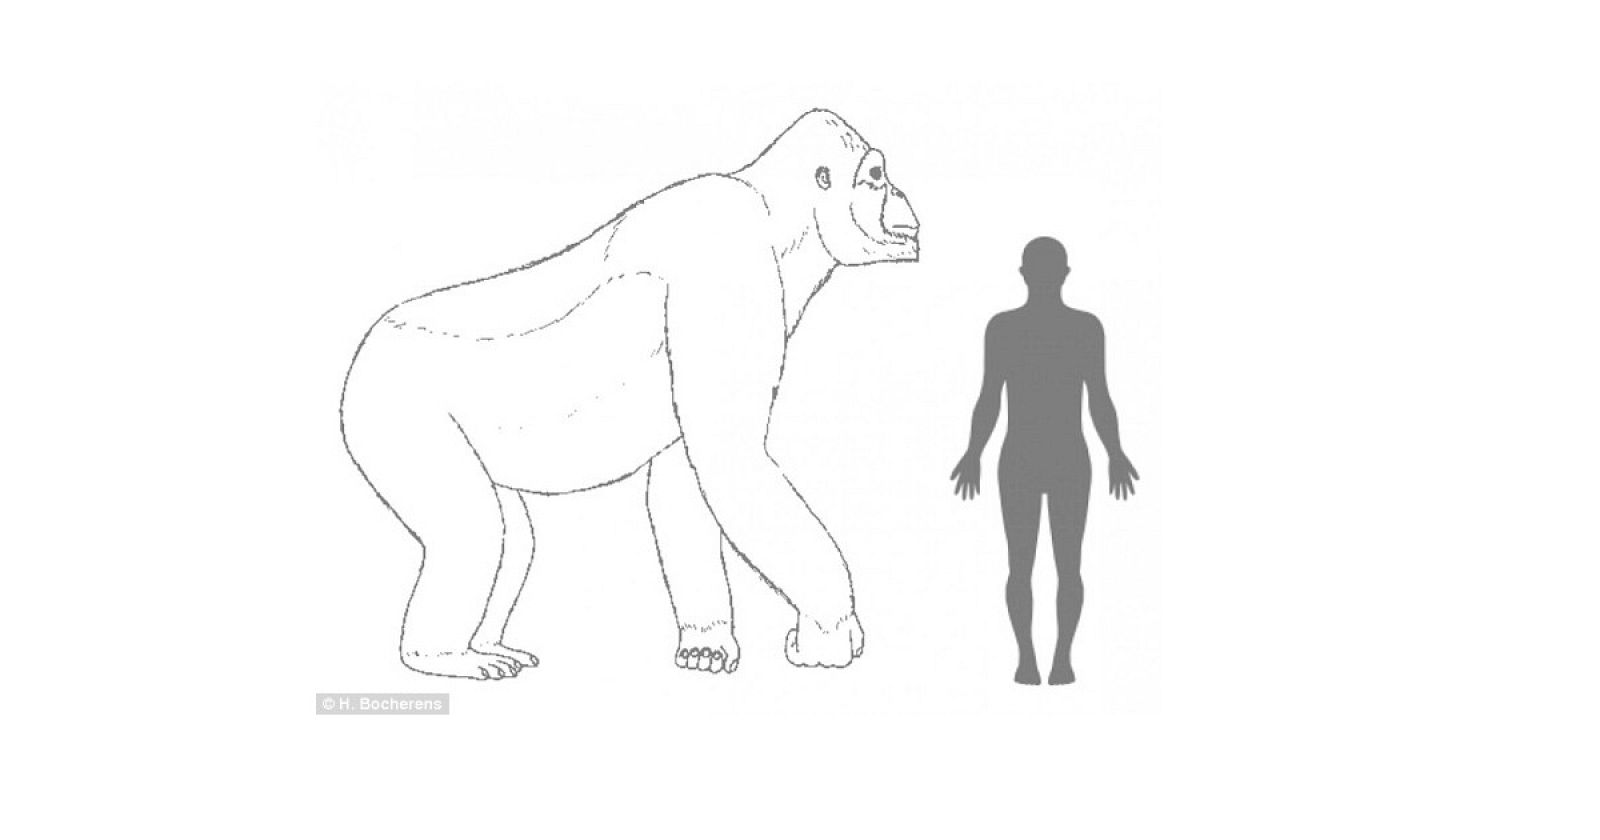 Comparativa de un Gigantophitecus con un humano de talla media.